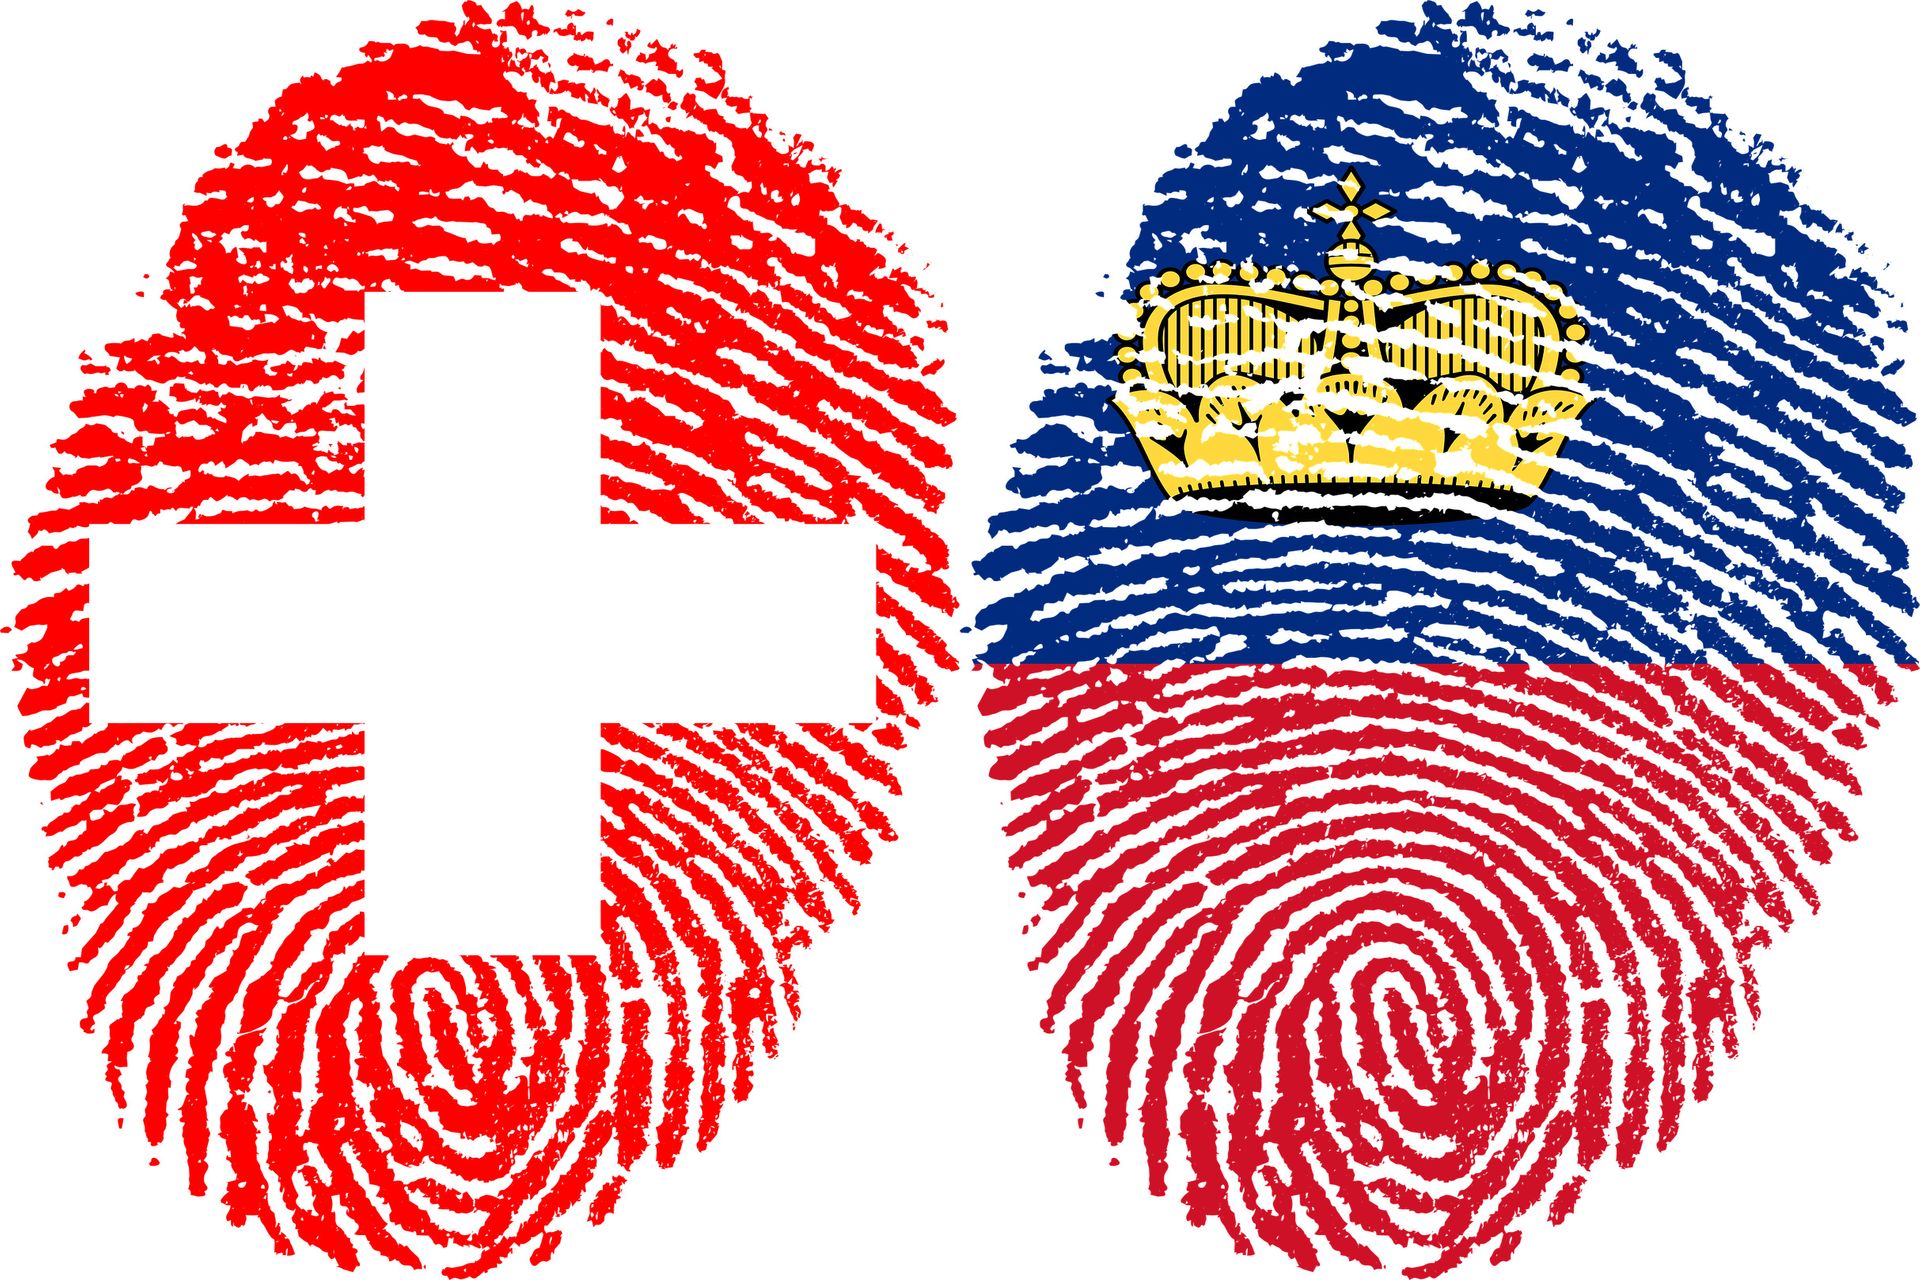 Δακτυλικό αποτύπωμα που απεικονίζει τις σημαίες της Ελβετικής Συνομοσπονδίας και του Πριγκιπάτου του Λιχτενστάιν